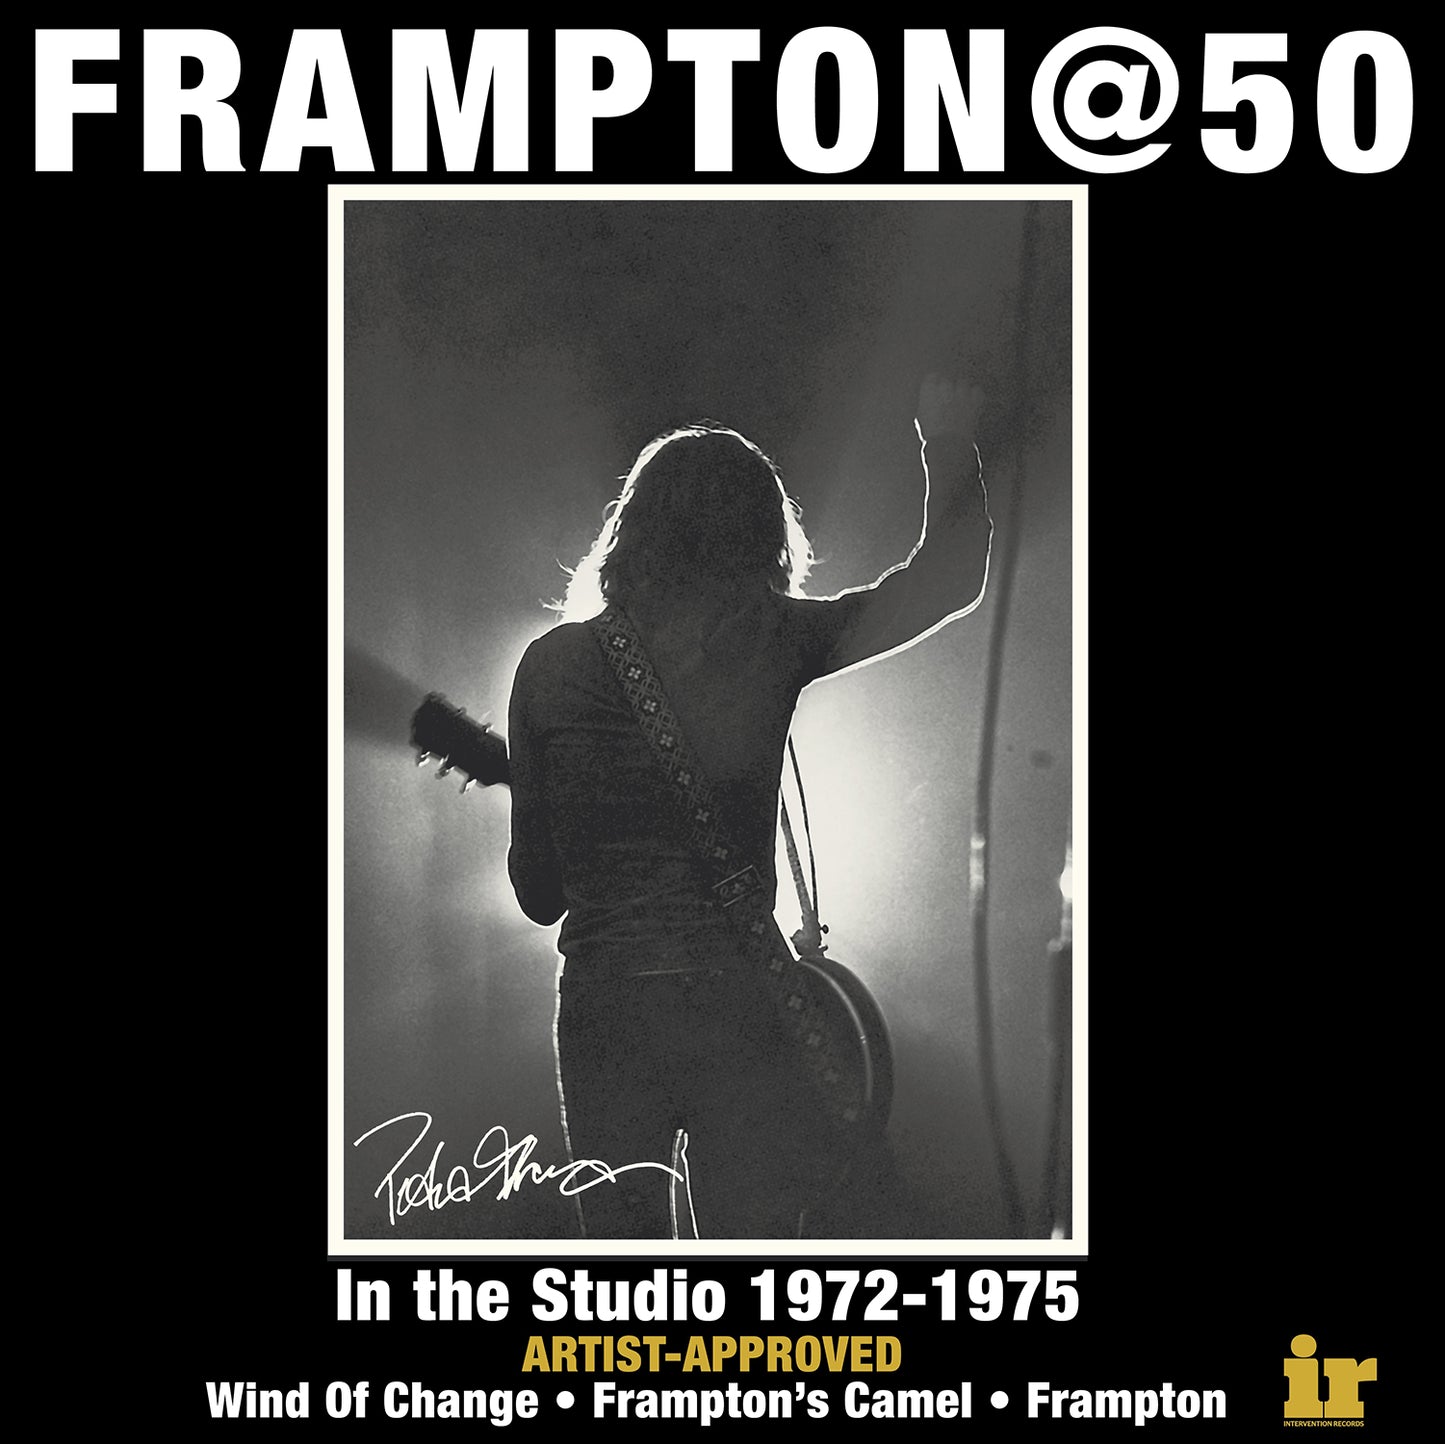 Peter Frampton - Box Set with Signed Poster - Frampton@50